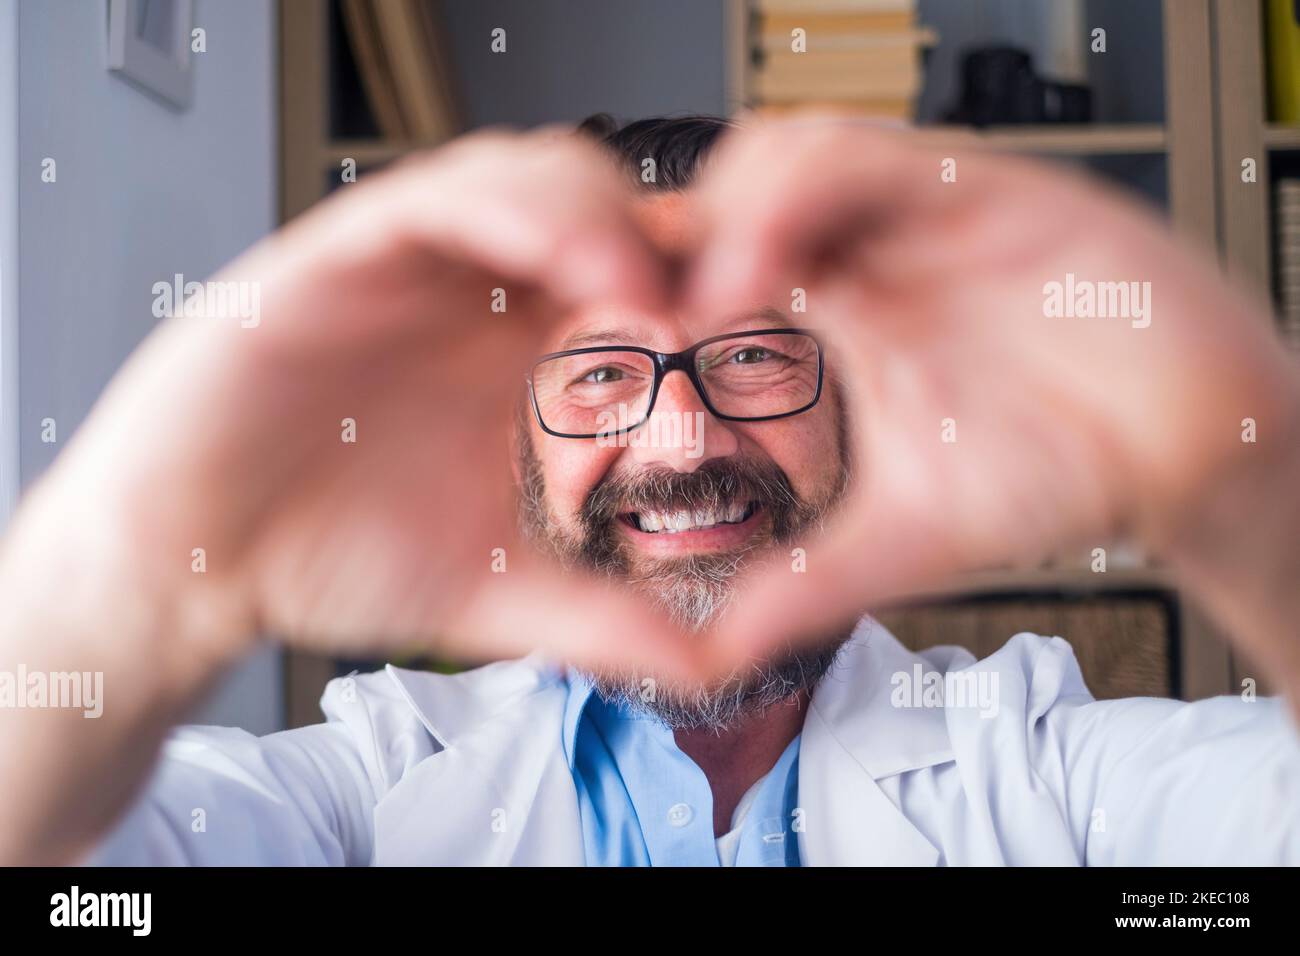 Mann macht Herz Form Geste mit den Händen. Lächelnder hübscher kaukasischer Arzt, der mit seinen Händen ein Liebessymbol macht. Mitarbeiter im Gesundheitswesen, der den Patienten Liebe und Unterstützung gibt Stockfoto